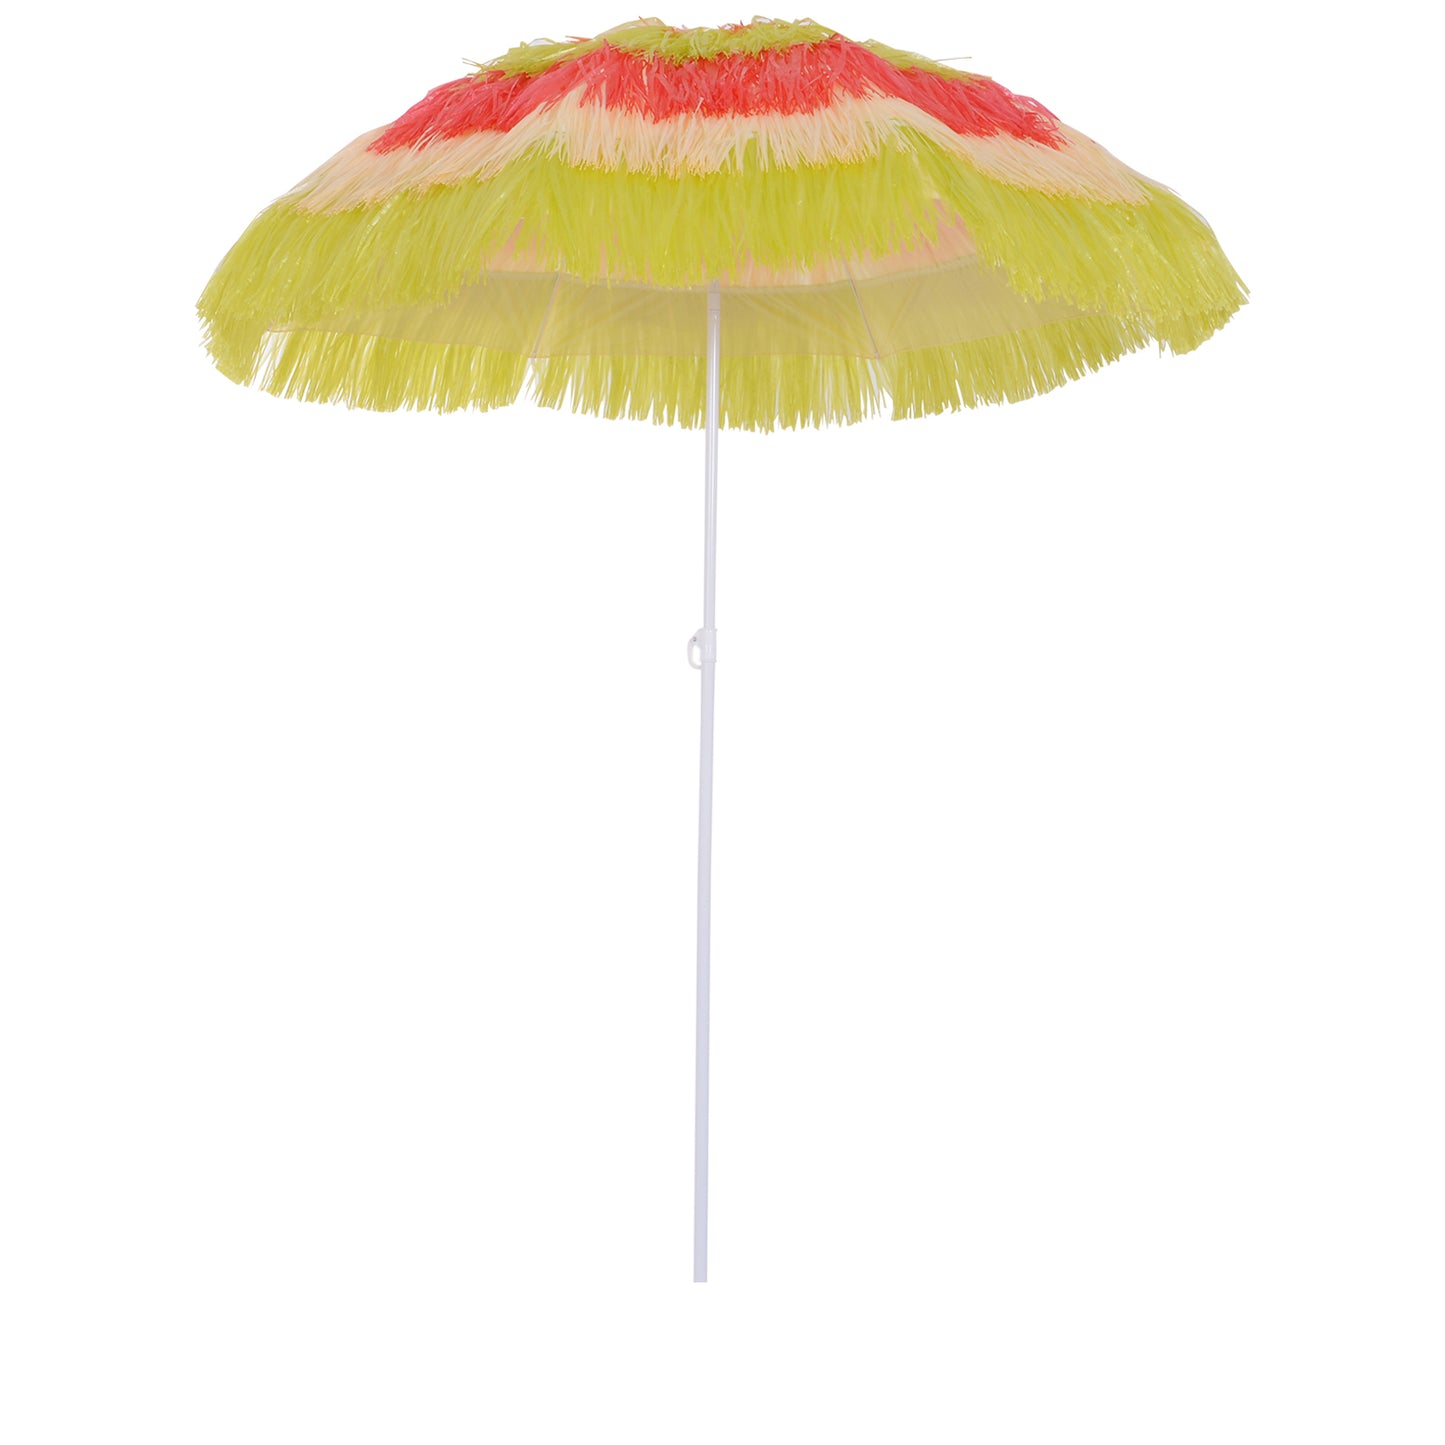 Nancy's Mora Parasol - Parasol de fête - Hawaï - Protection solaire - Abat-jour - Jaune - Rouge - Ø 160 cm